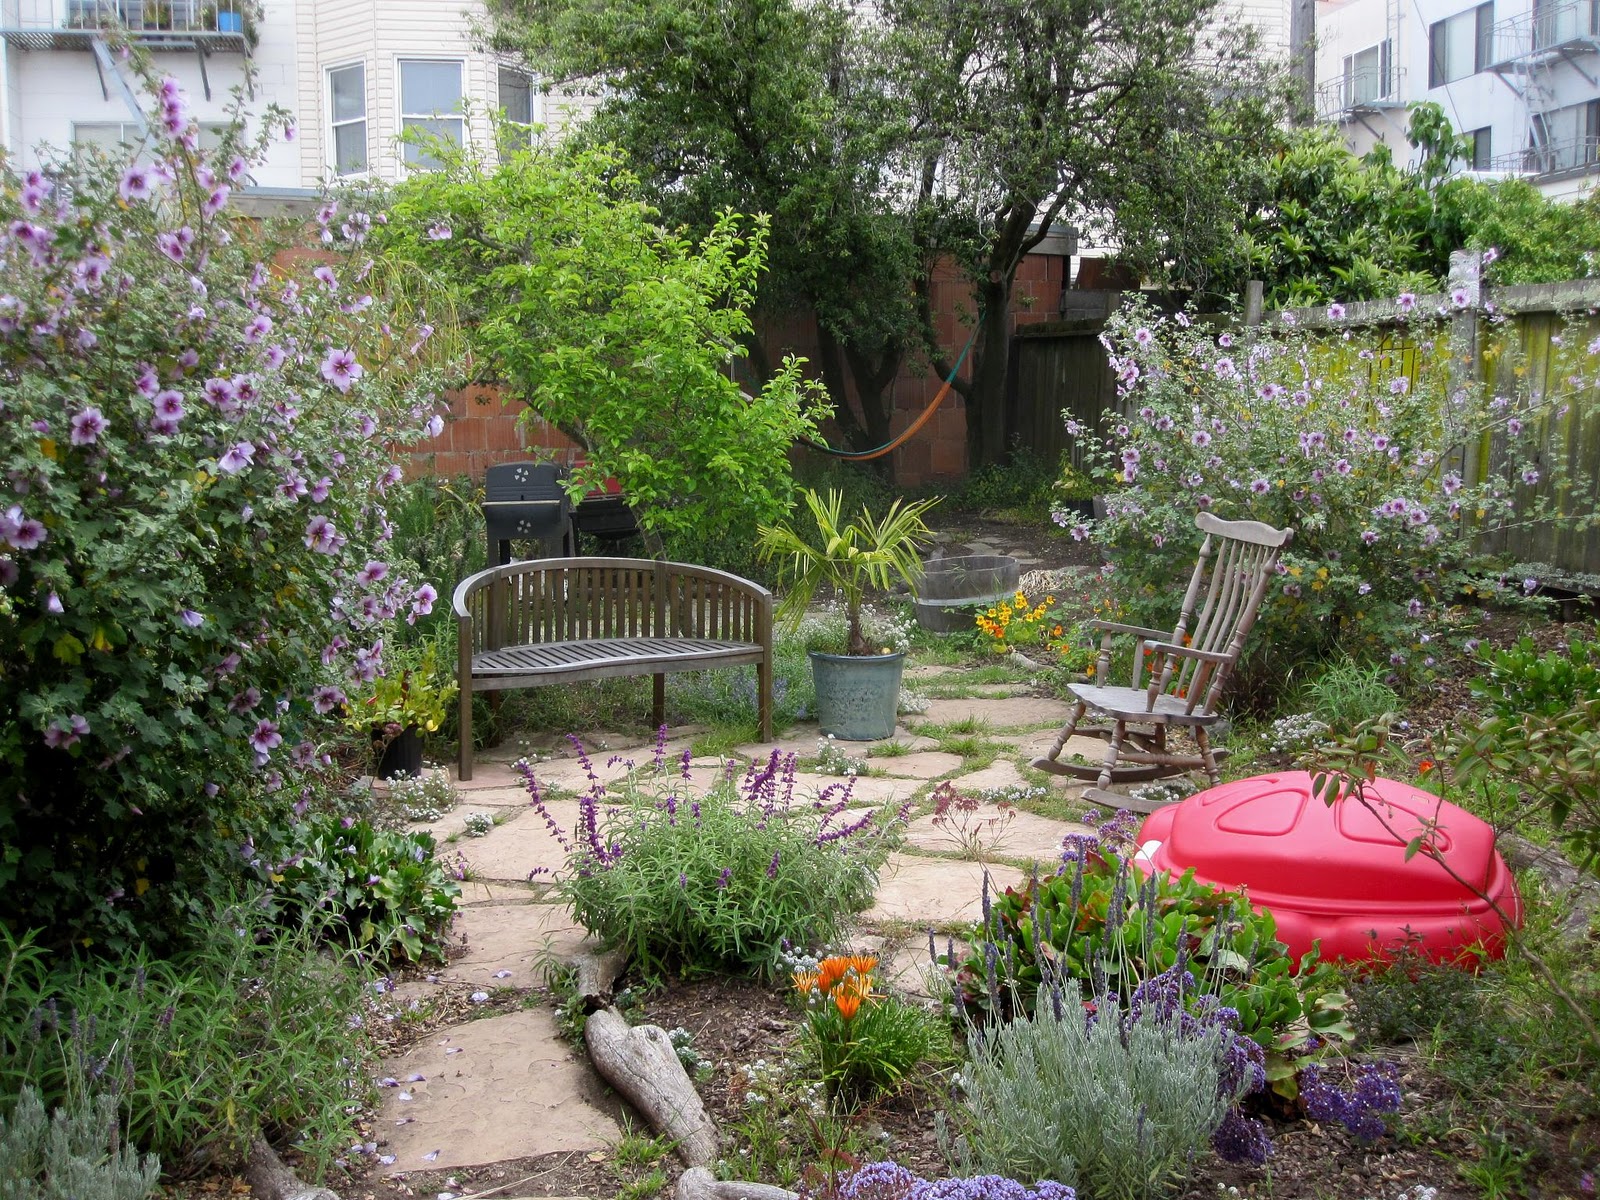 Amazing Small Backyard Landscaping Ideas